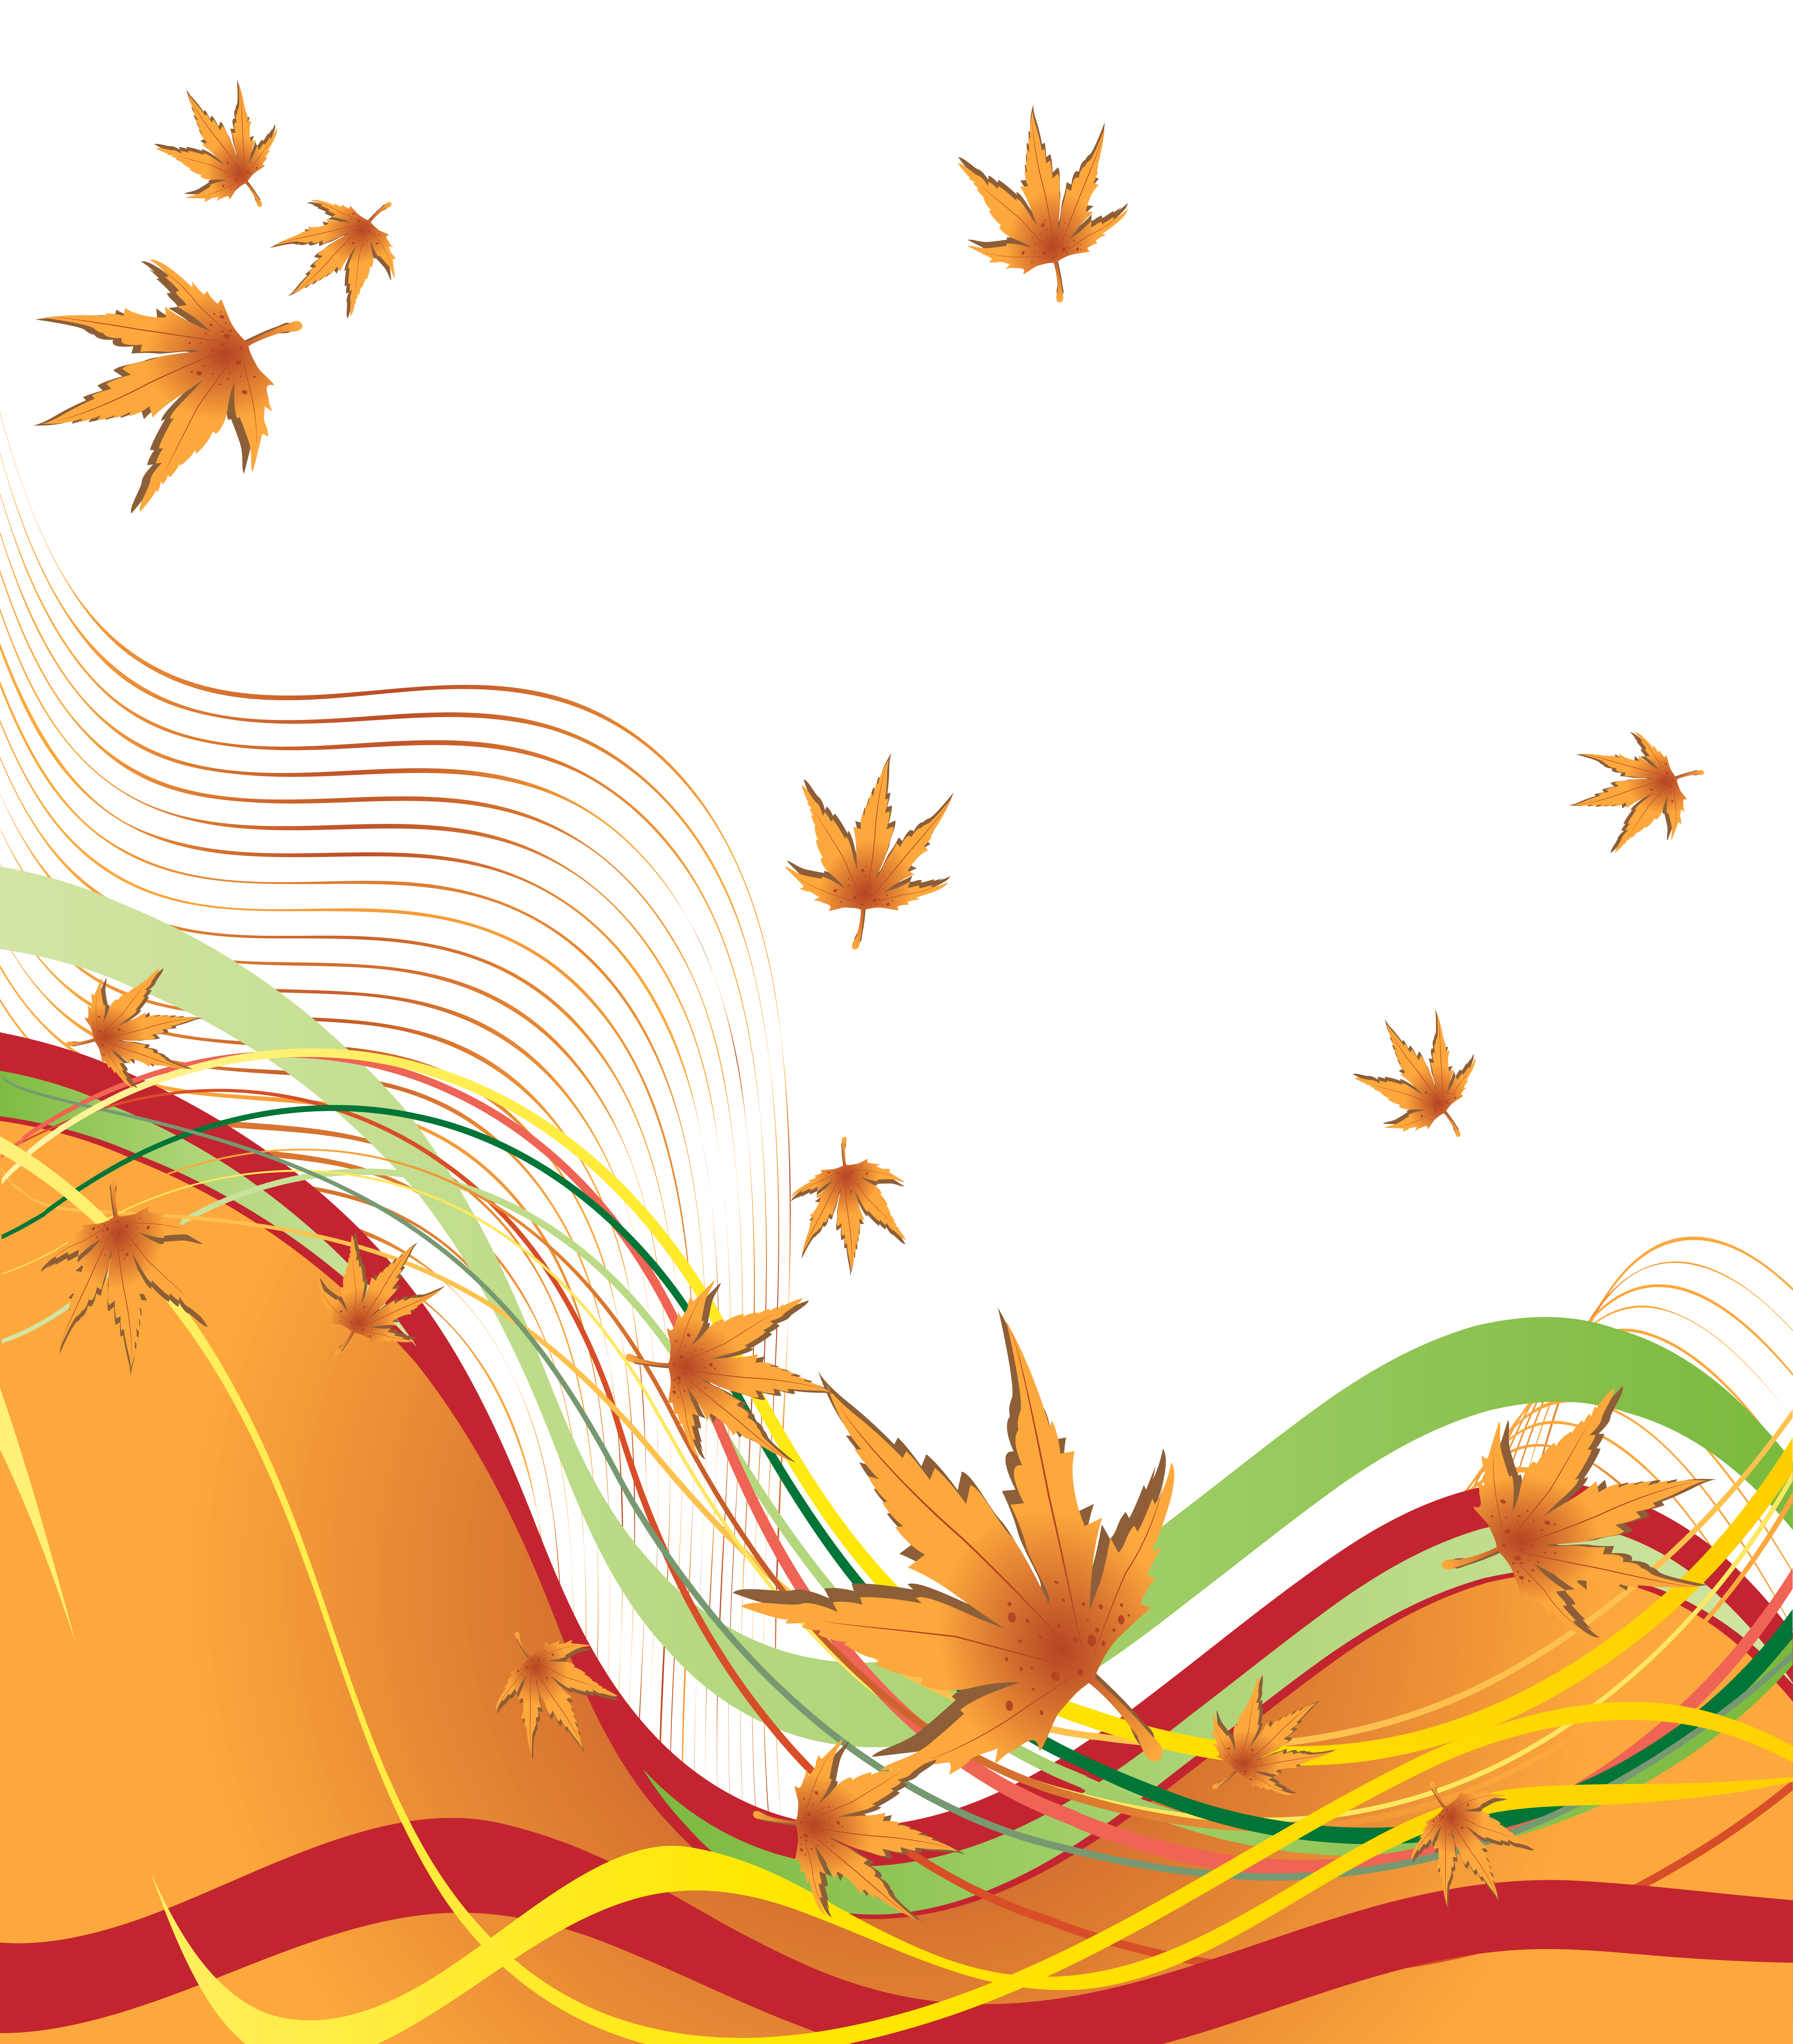 Autumn Decorative Border PNG Clipart Image